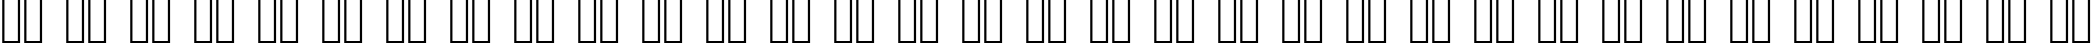 Пример написания русского алфавита шрифтом Britannic Bold